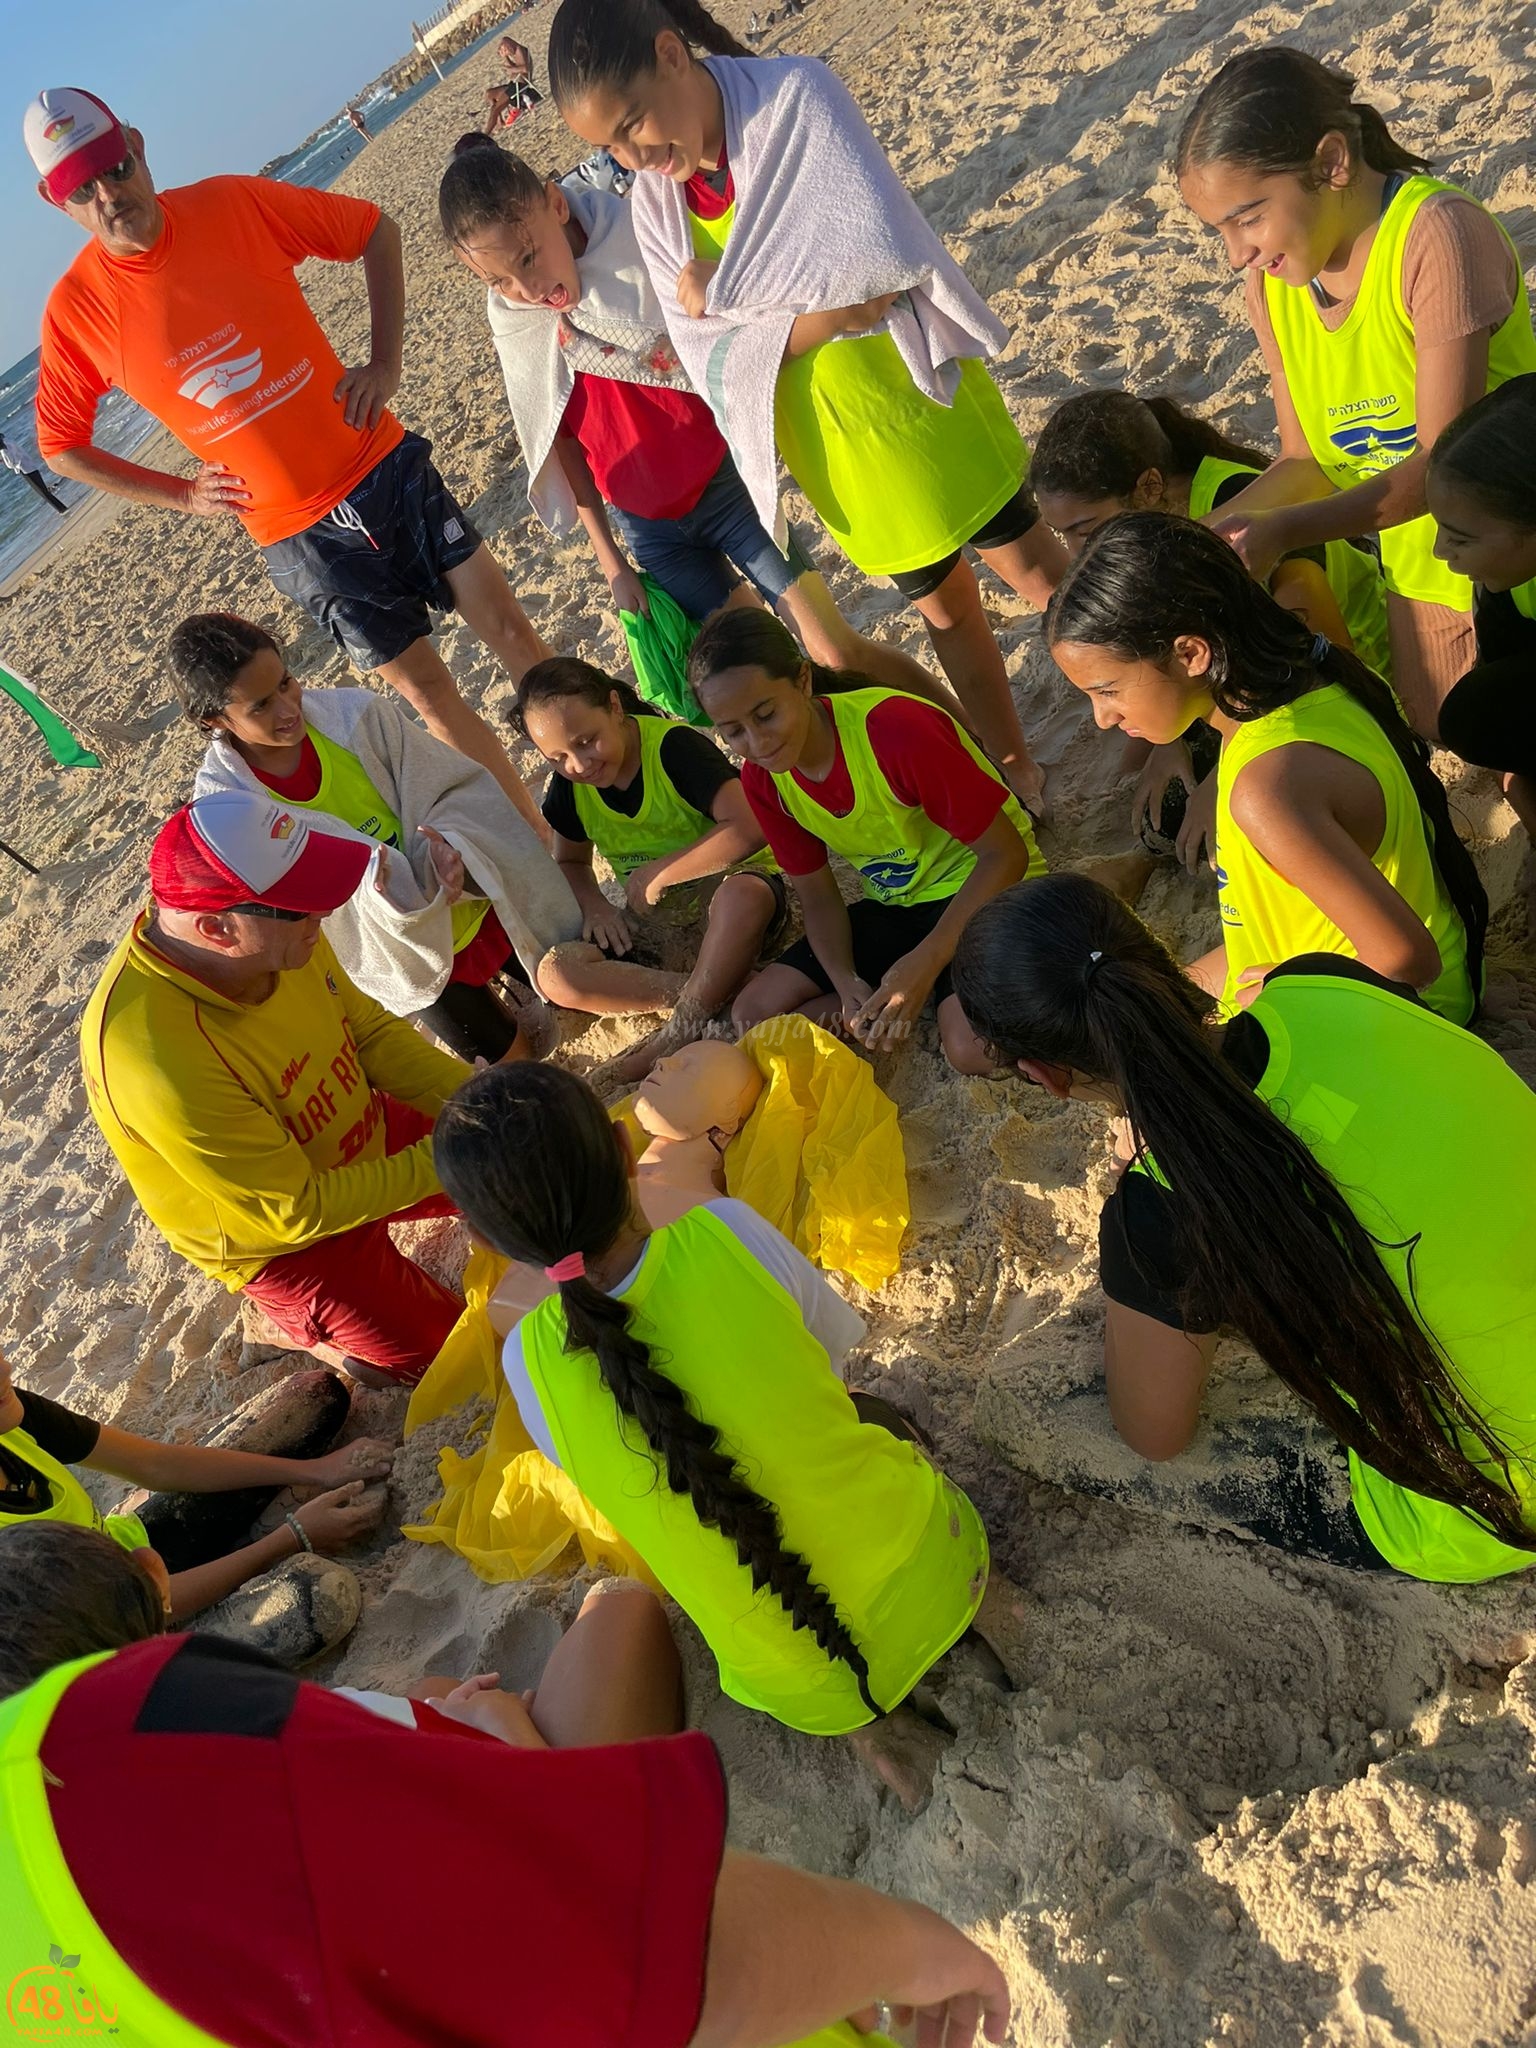  يافا: مركز دافيس لويس يختتم دورة الانقاذ البحري للفتيات